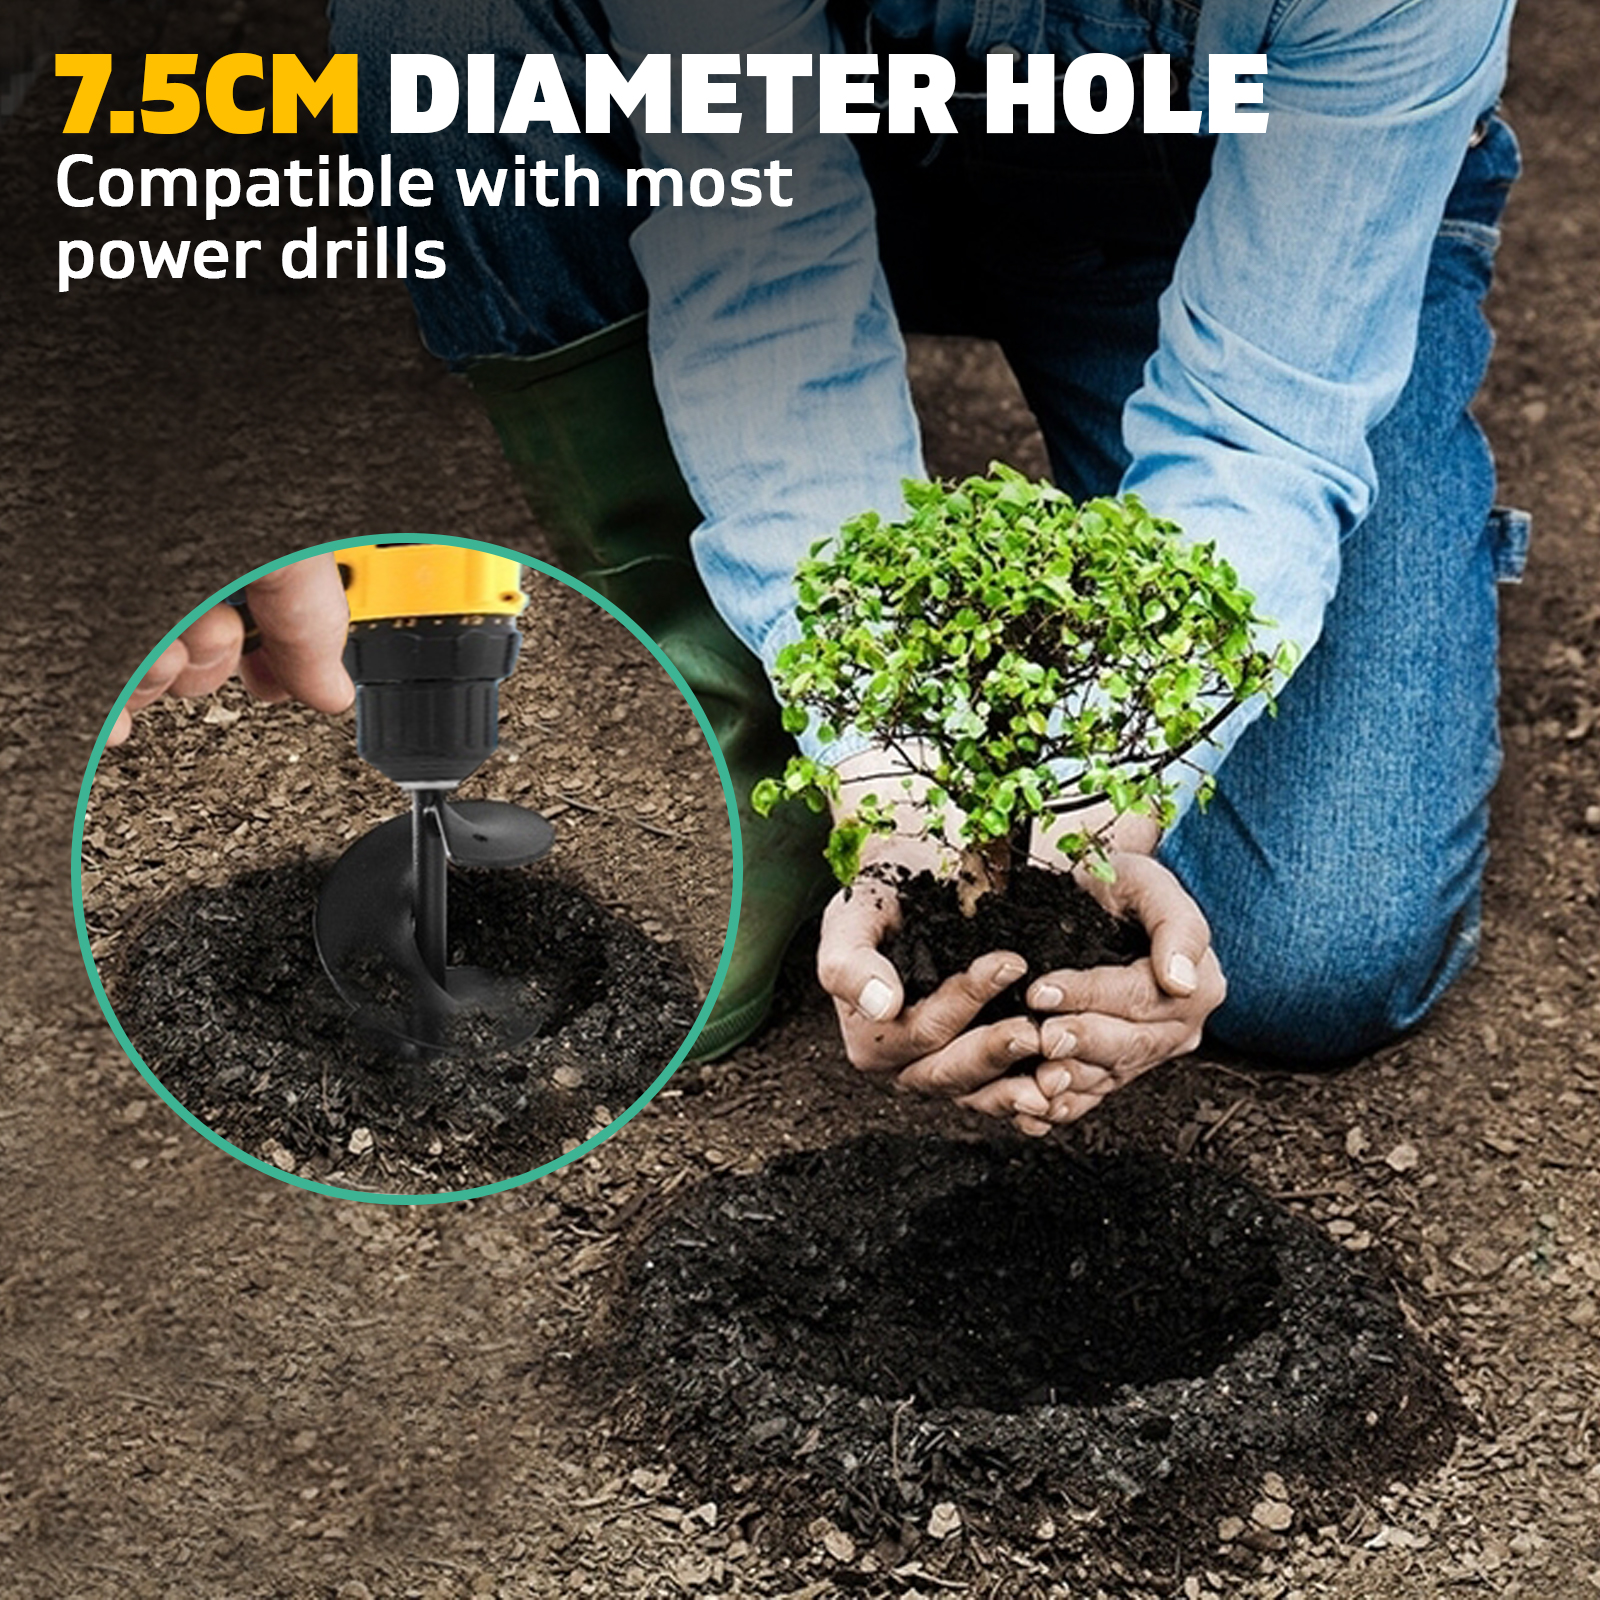 Garden Power Spiral Auger Hole Digger Earth Drill Bit Black 75x300 & 600mm